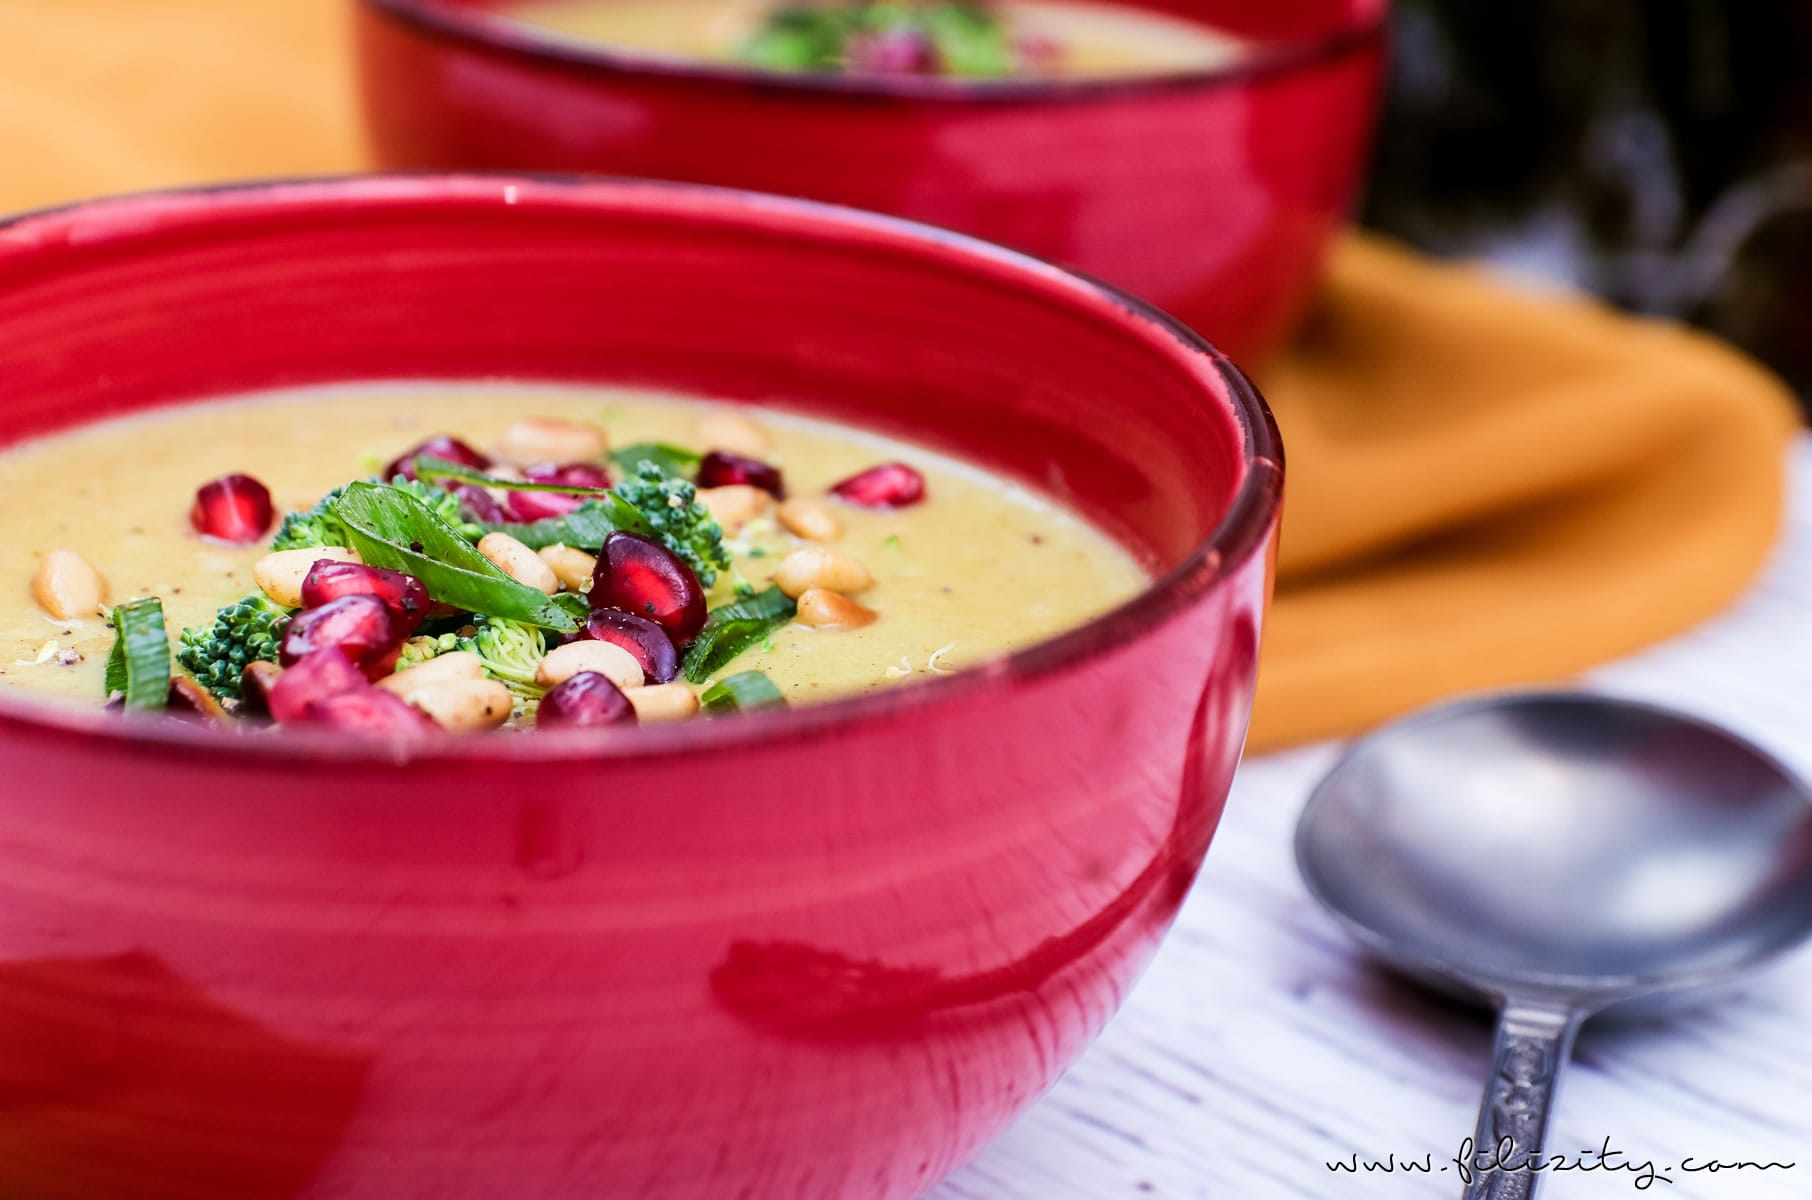 Orientalische Brokkoli-Suppe mit Ingwer, Kokos und Granatapfel | Veganes Rezept für Vorspeise oder Hauptgericht | Filizity.com | Food-Blog aus dem Rheinland #vegan #gesund #soulfood